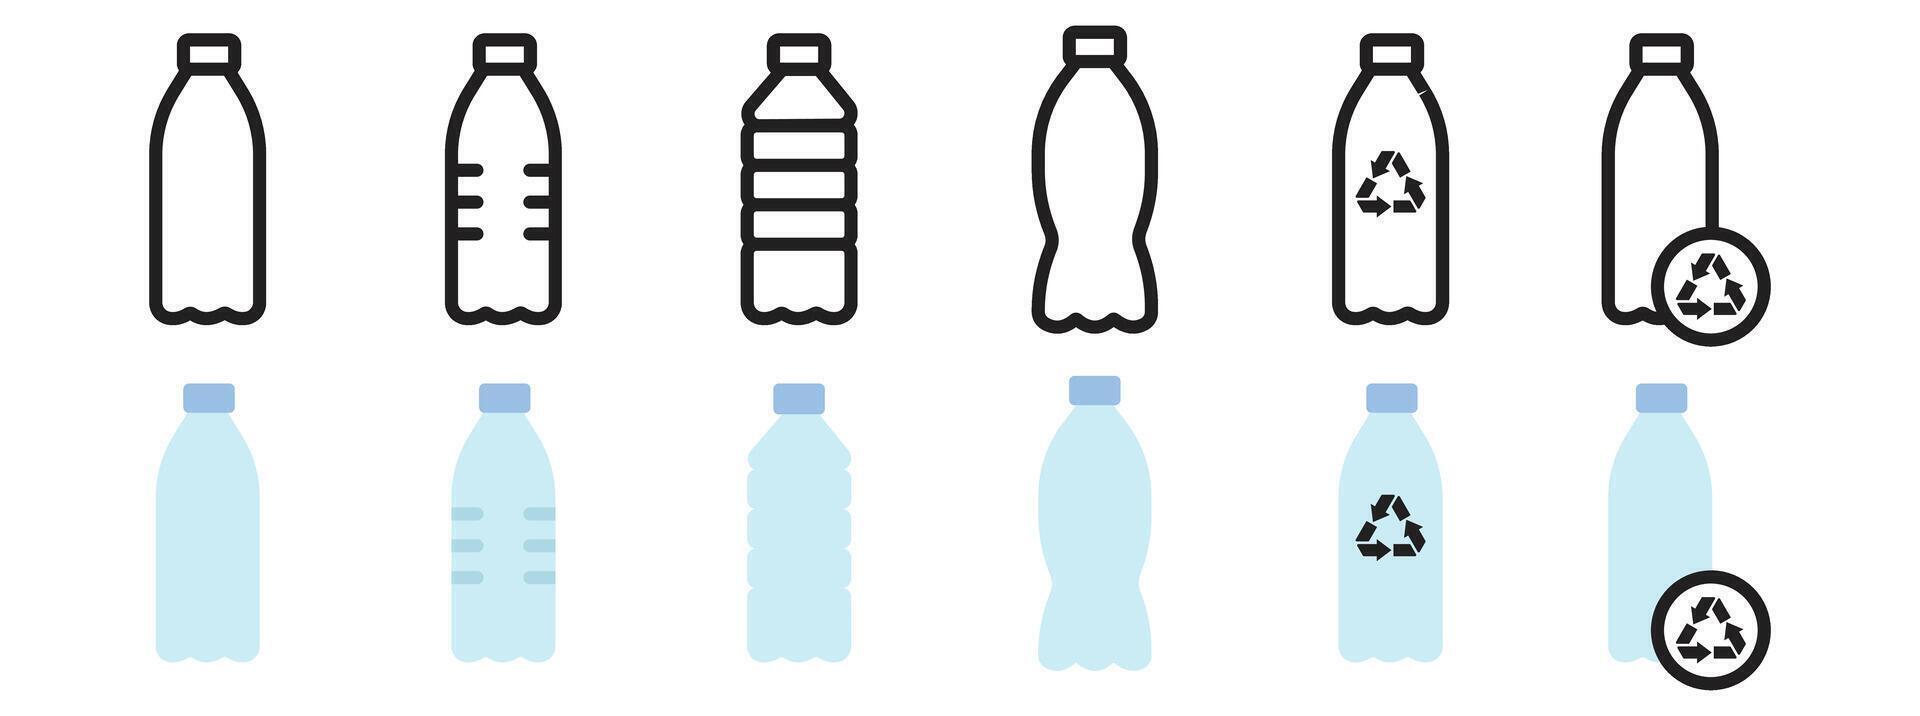 Plastique bouteille recycler capable, Plastique déchets, l'eau bouteille boire, biodégradable poubelle des ordures vecteur